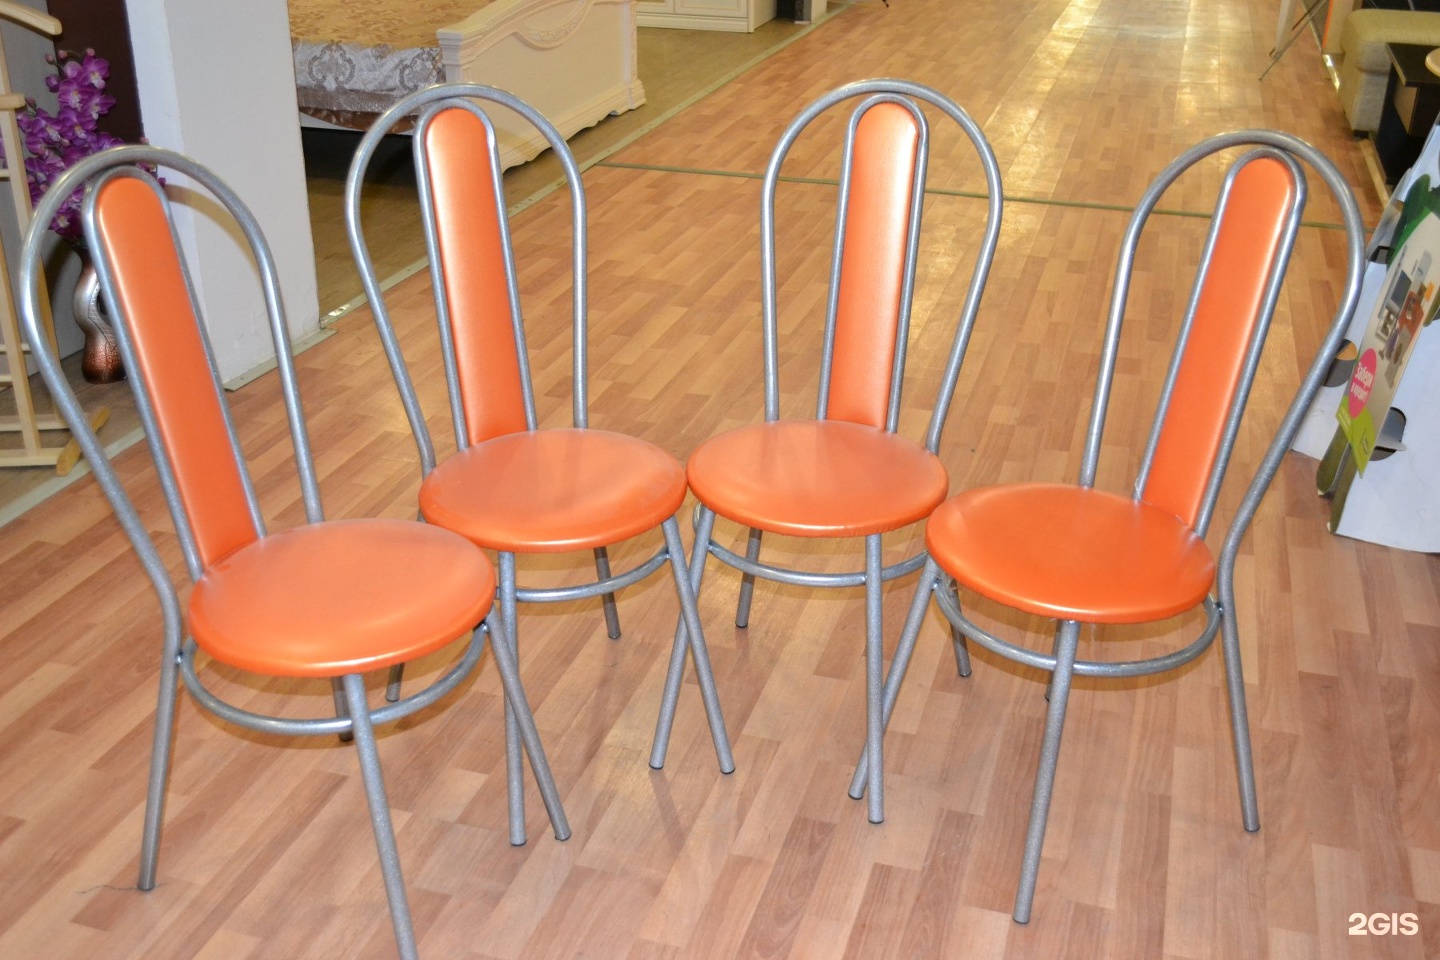 Стулья б у купить на авито. Стул кухонный оранжевый. Венский стол и стулья. Форма стульев для кухни. Стул форма.